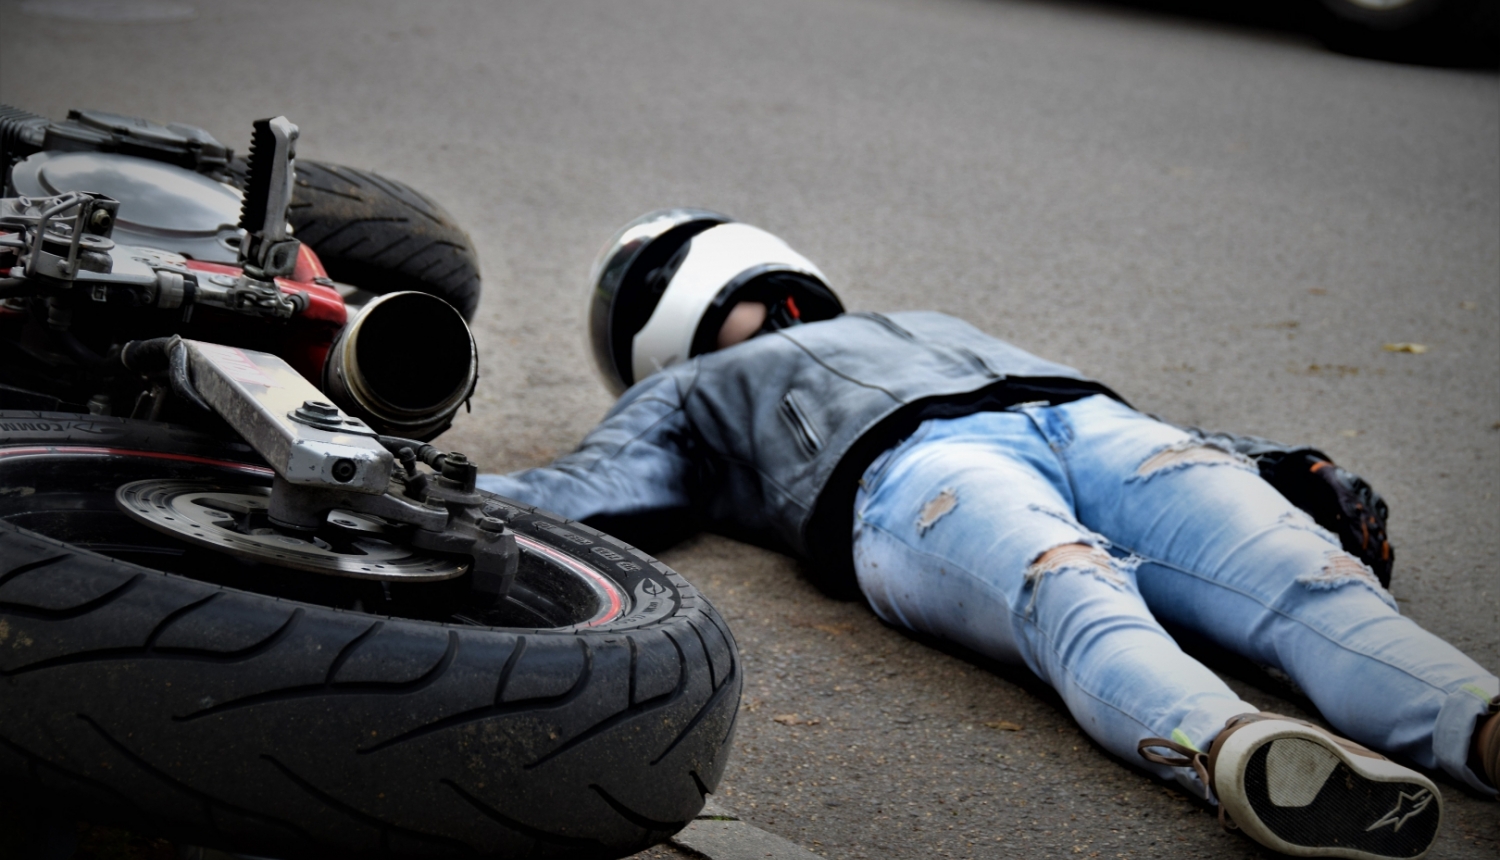 uz ielas apgāzies motocikls un motociklists guļ uz zemes (ilustratīva bilde)